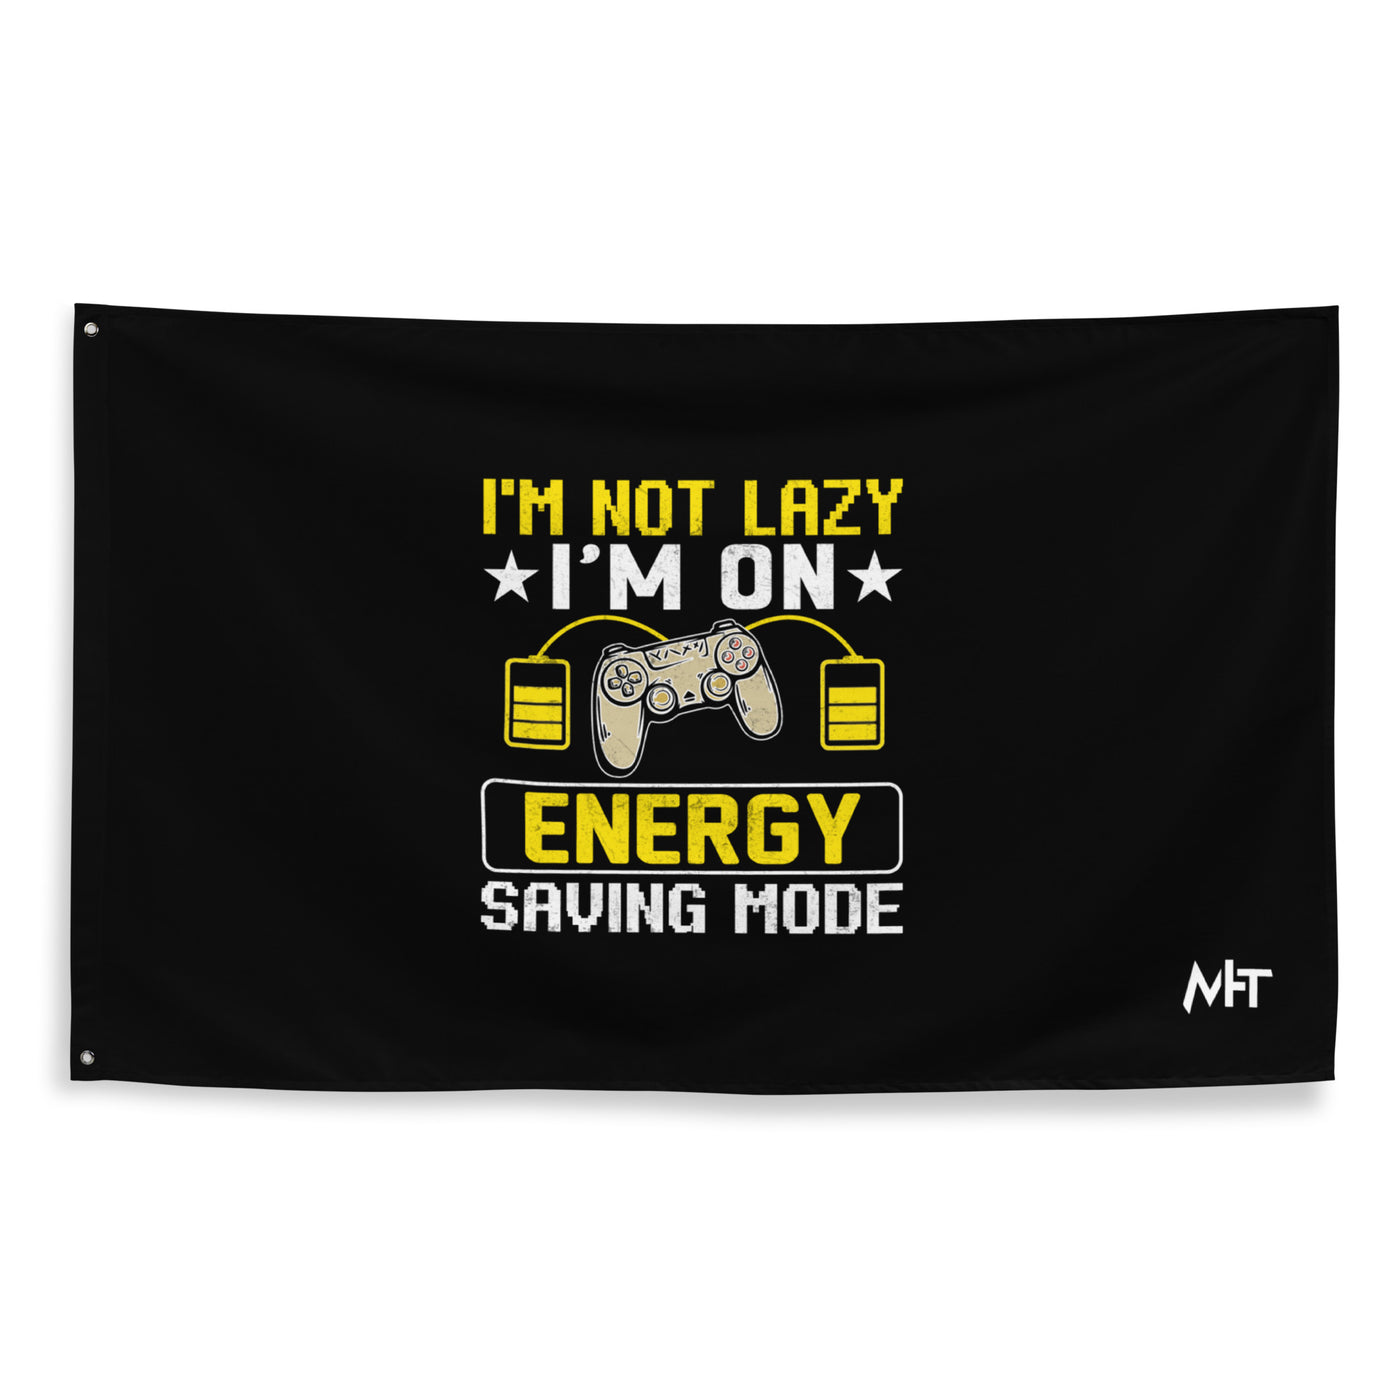 I am not Lazy, I am on Energy Saving Mode - Flag